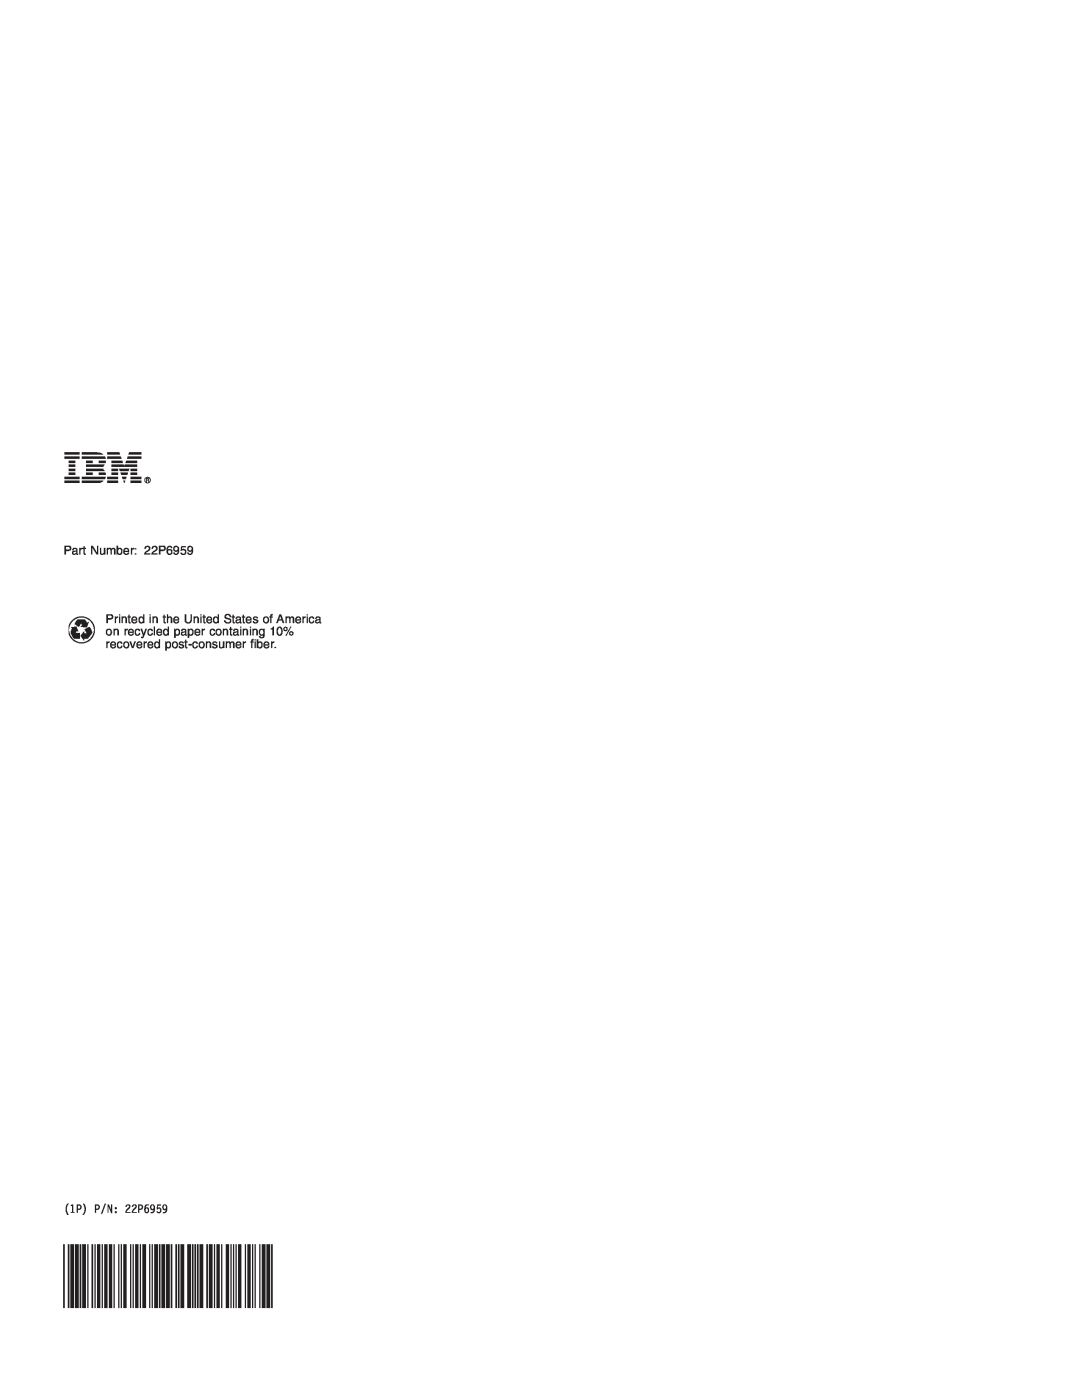 IBM manual Part Number 22P6959, 1P P/N 22P6959 